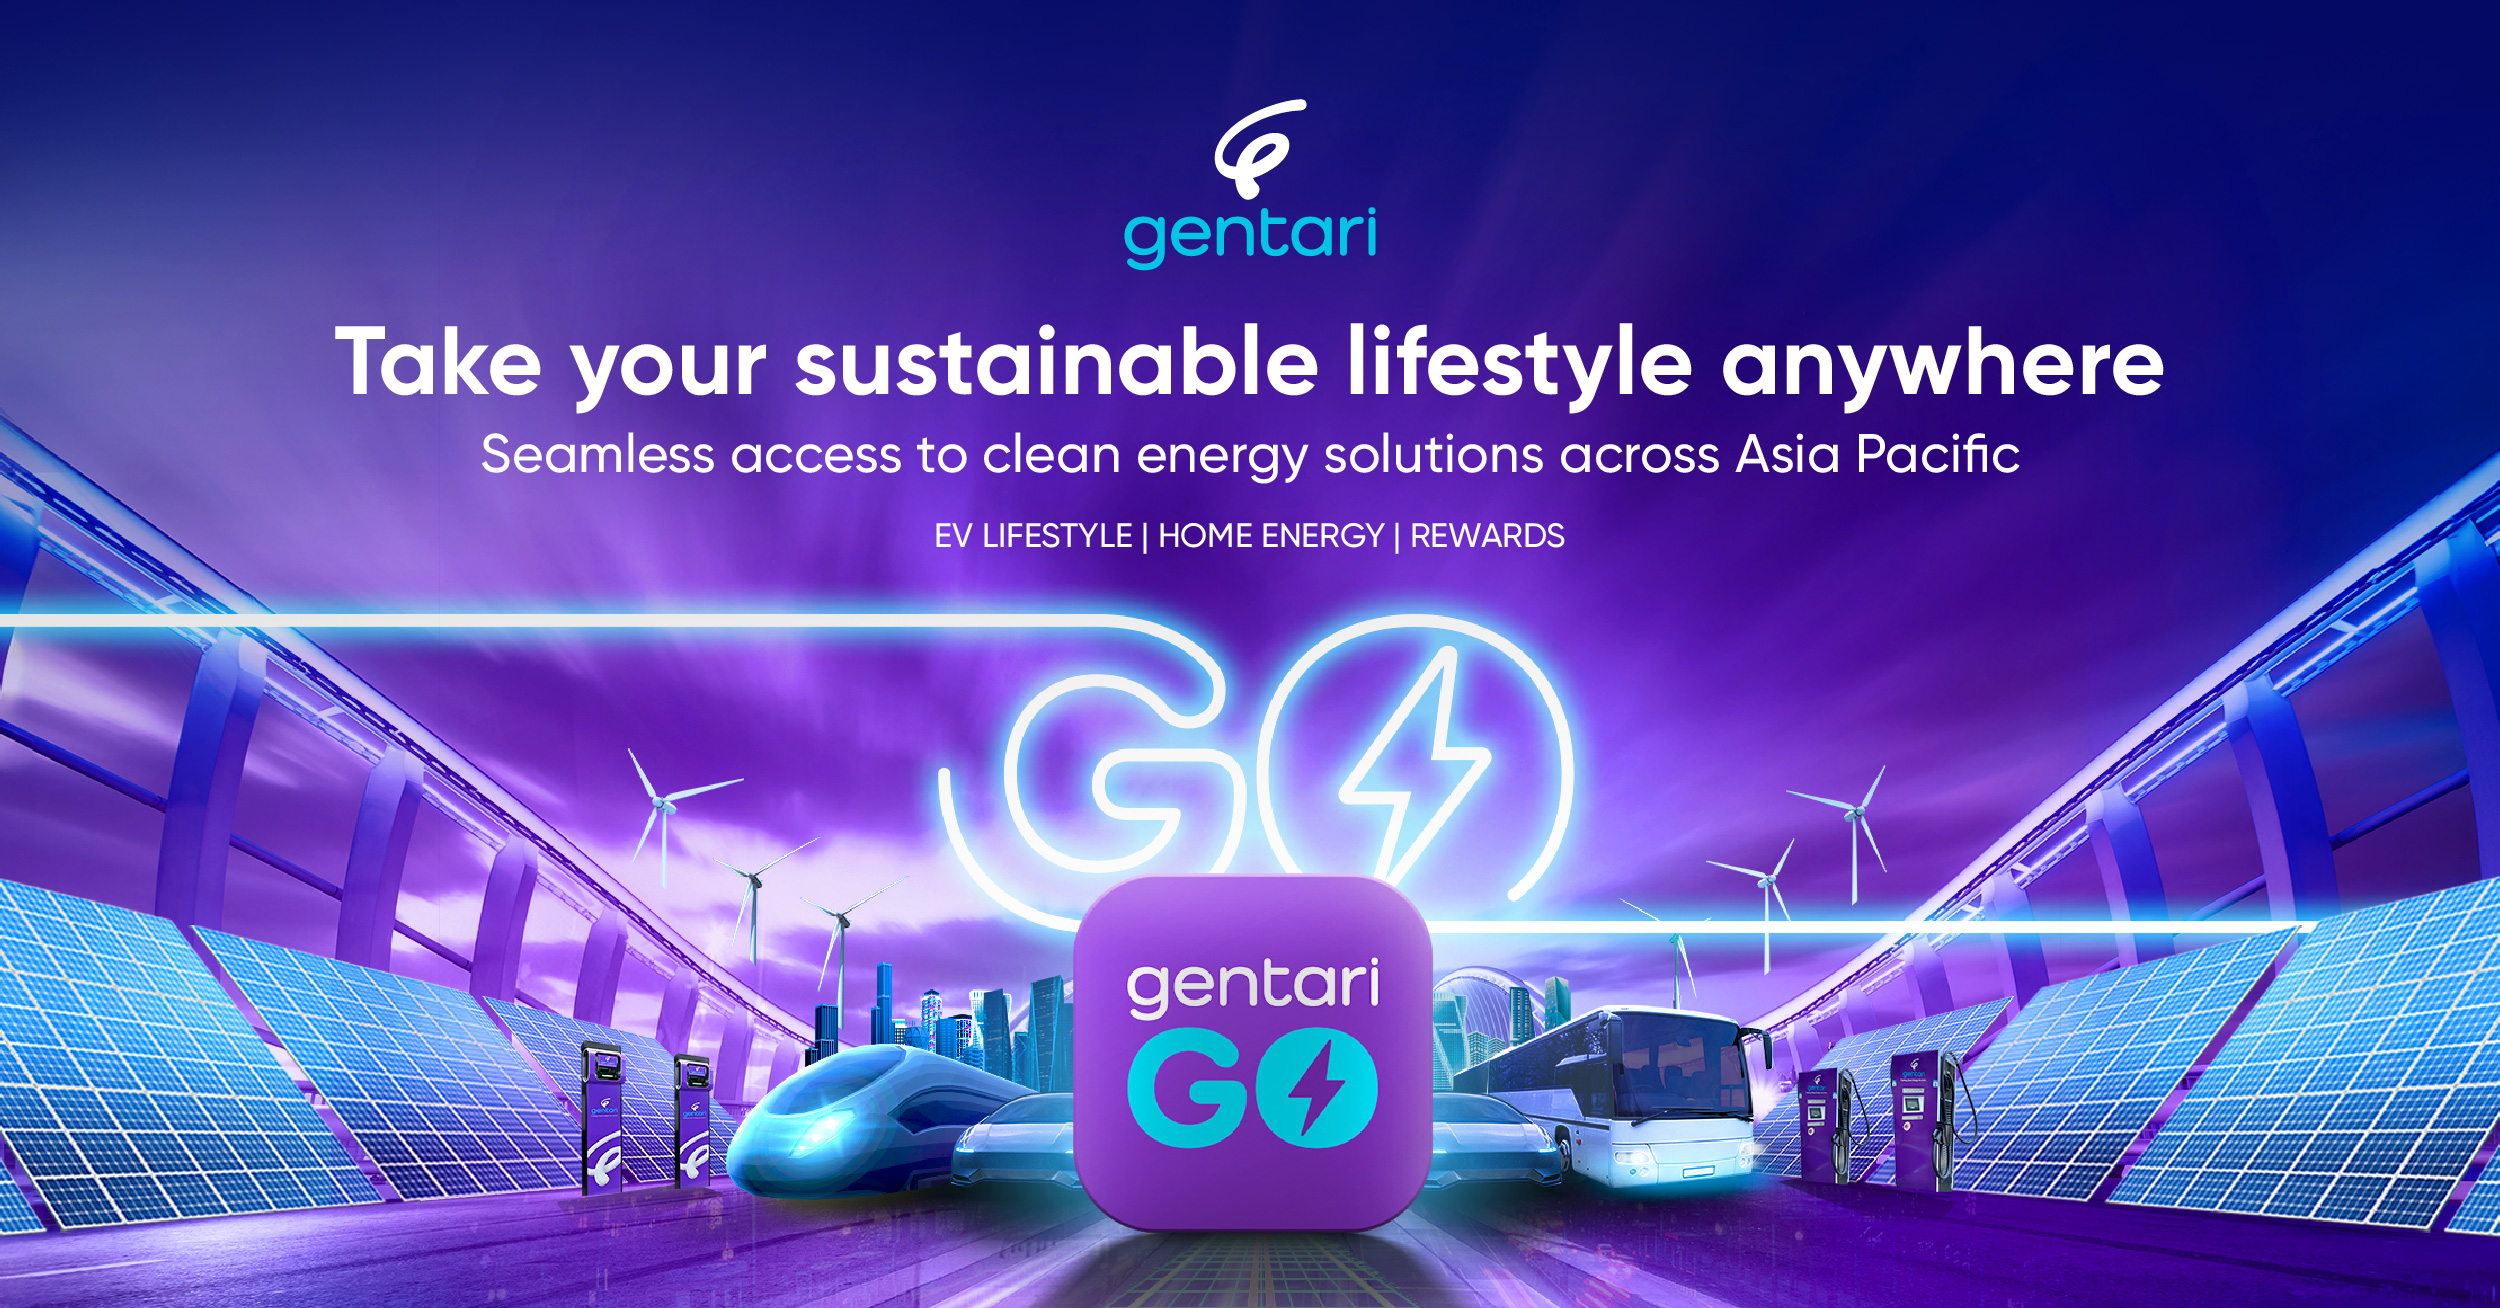 从手机 App Store 下载 Gentari Go 应用程序改用清洁能源